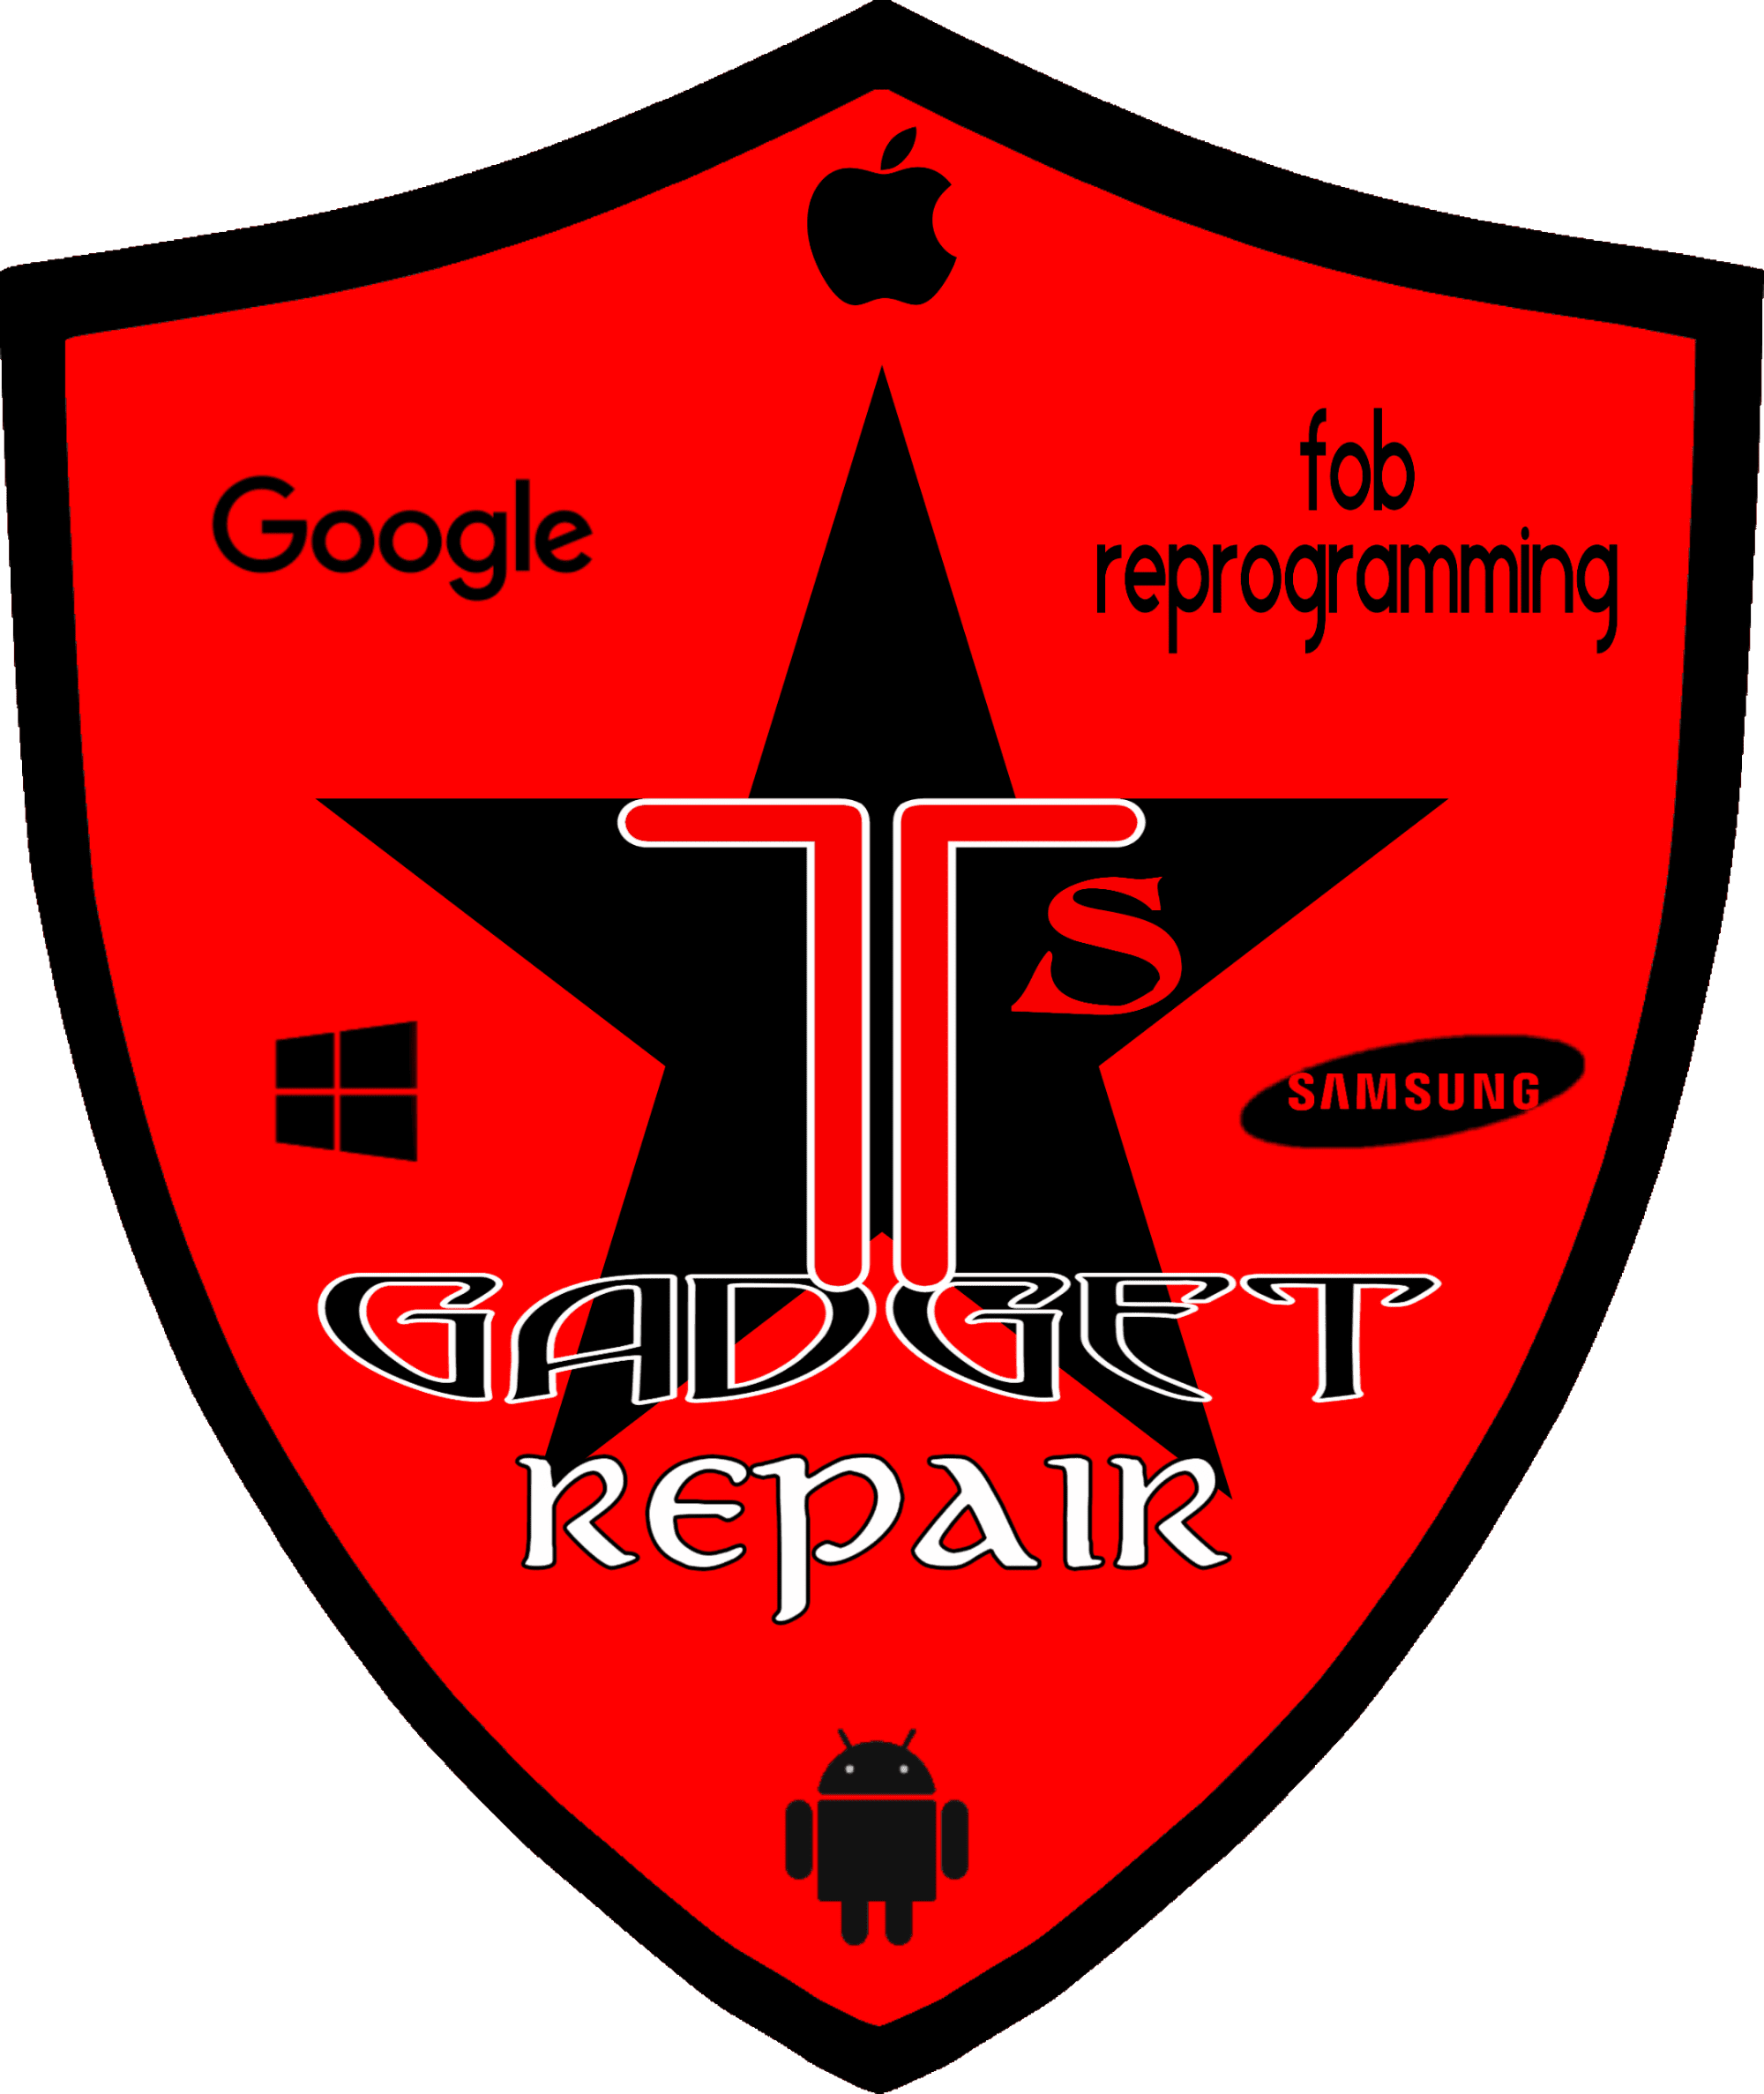 T's Gadget Repair